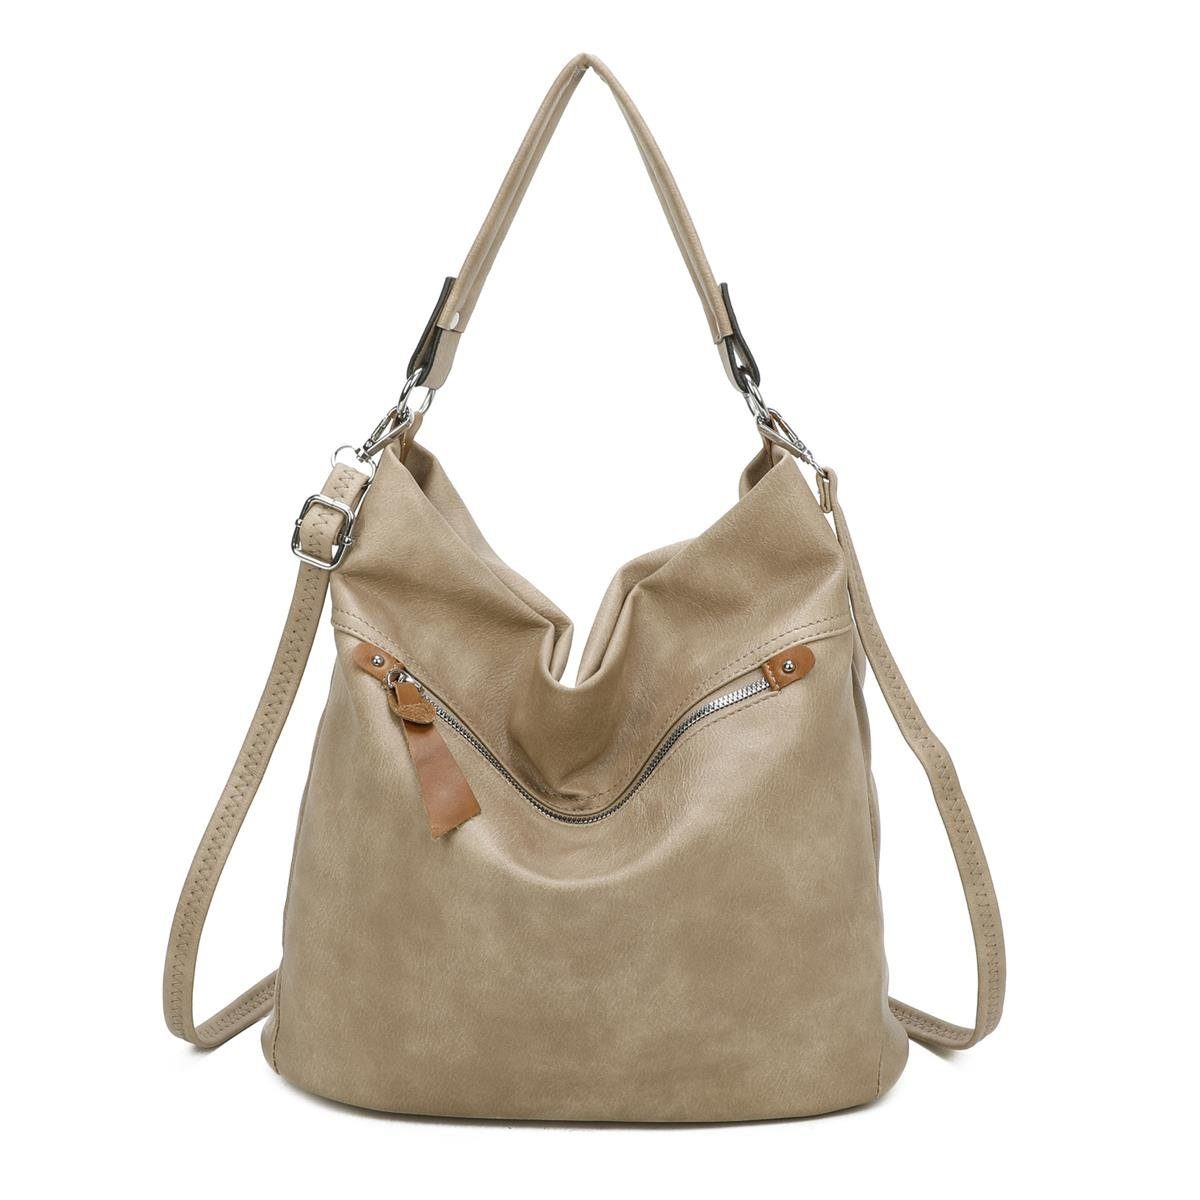 ITALYSHOP24 Schultertasche XL Damen Tasche Shopper Hobo-Bag Schultertasche, ein Leichtgewicht, als Handtasche, Henkeltasche tragbar